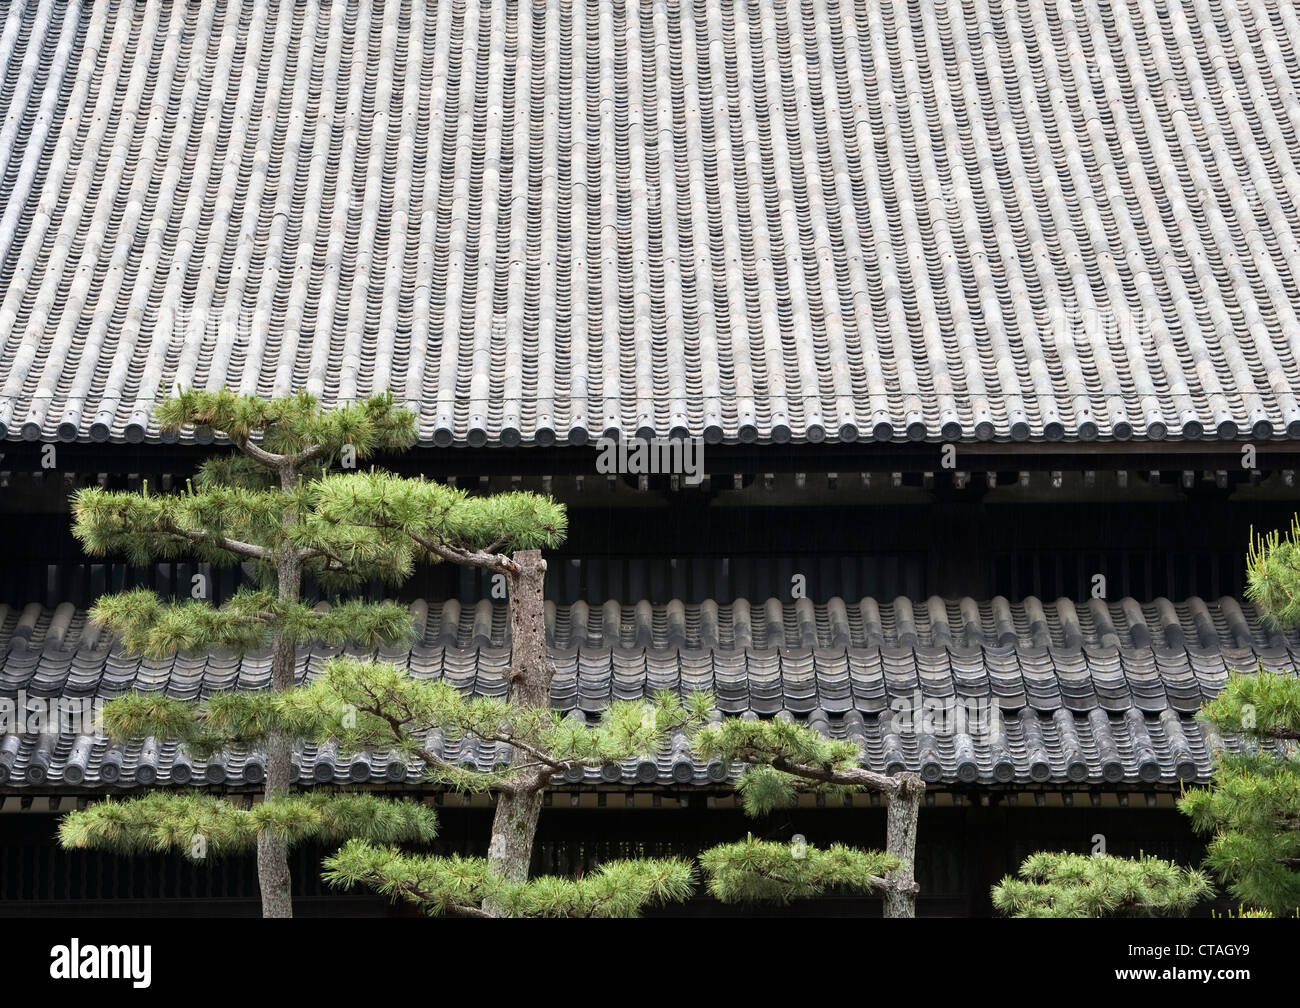 Alberi di pino nero giapponesi (Pinus thunbergii) accuratamente potati di fronte al tetto in tegole di un tempio buddista a Tofuku-ji, Kyoto, Giappone Foto Stock